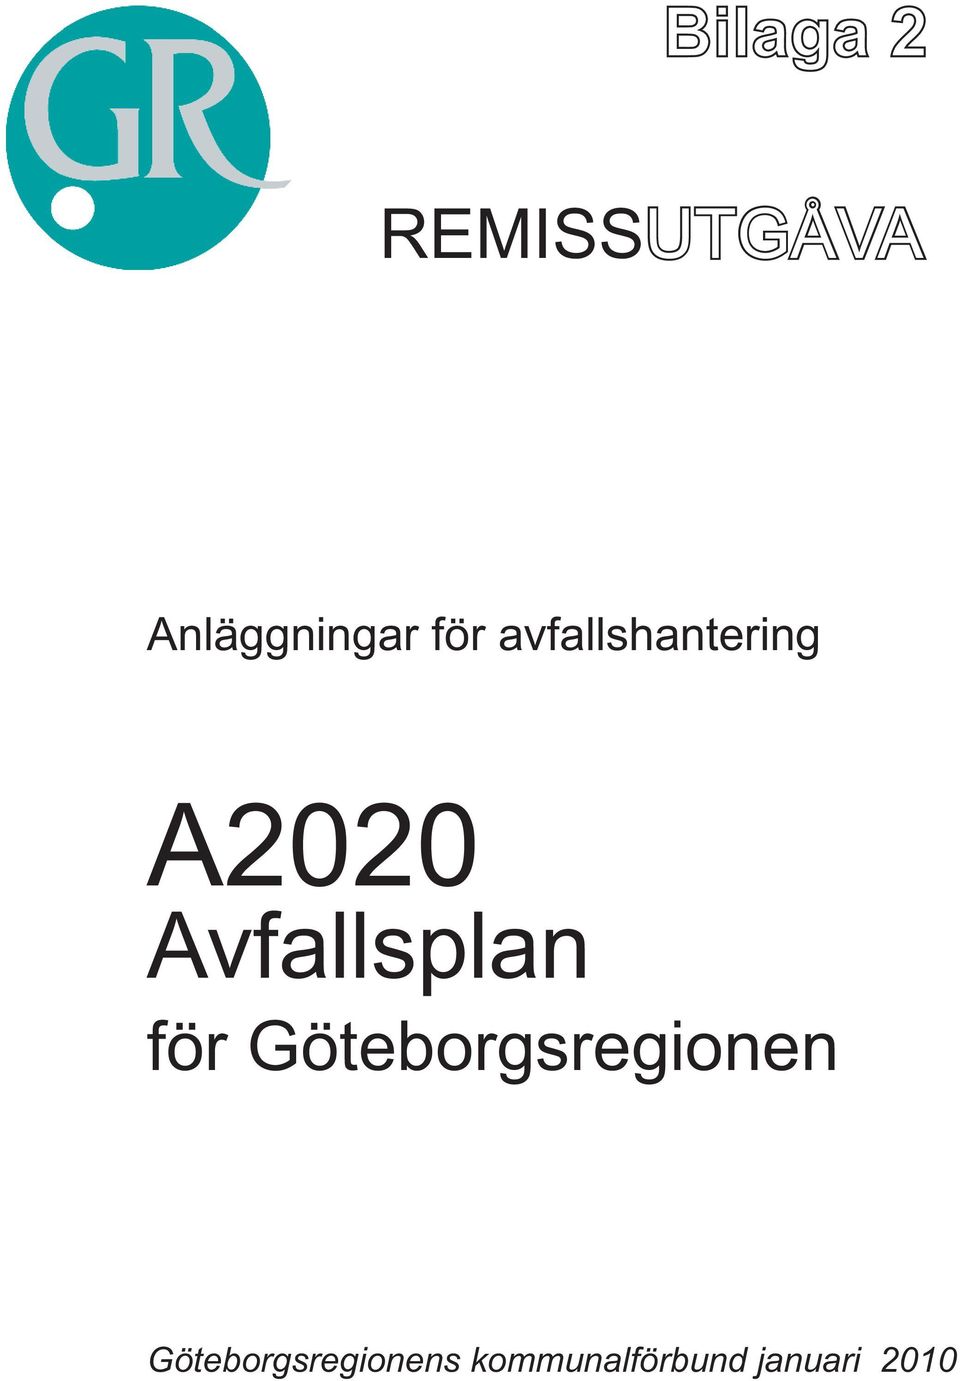 Avfallsplan för Göteborgsregionen